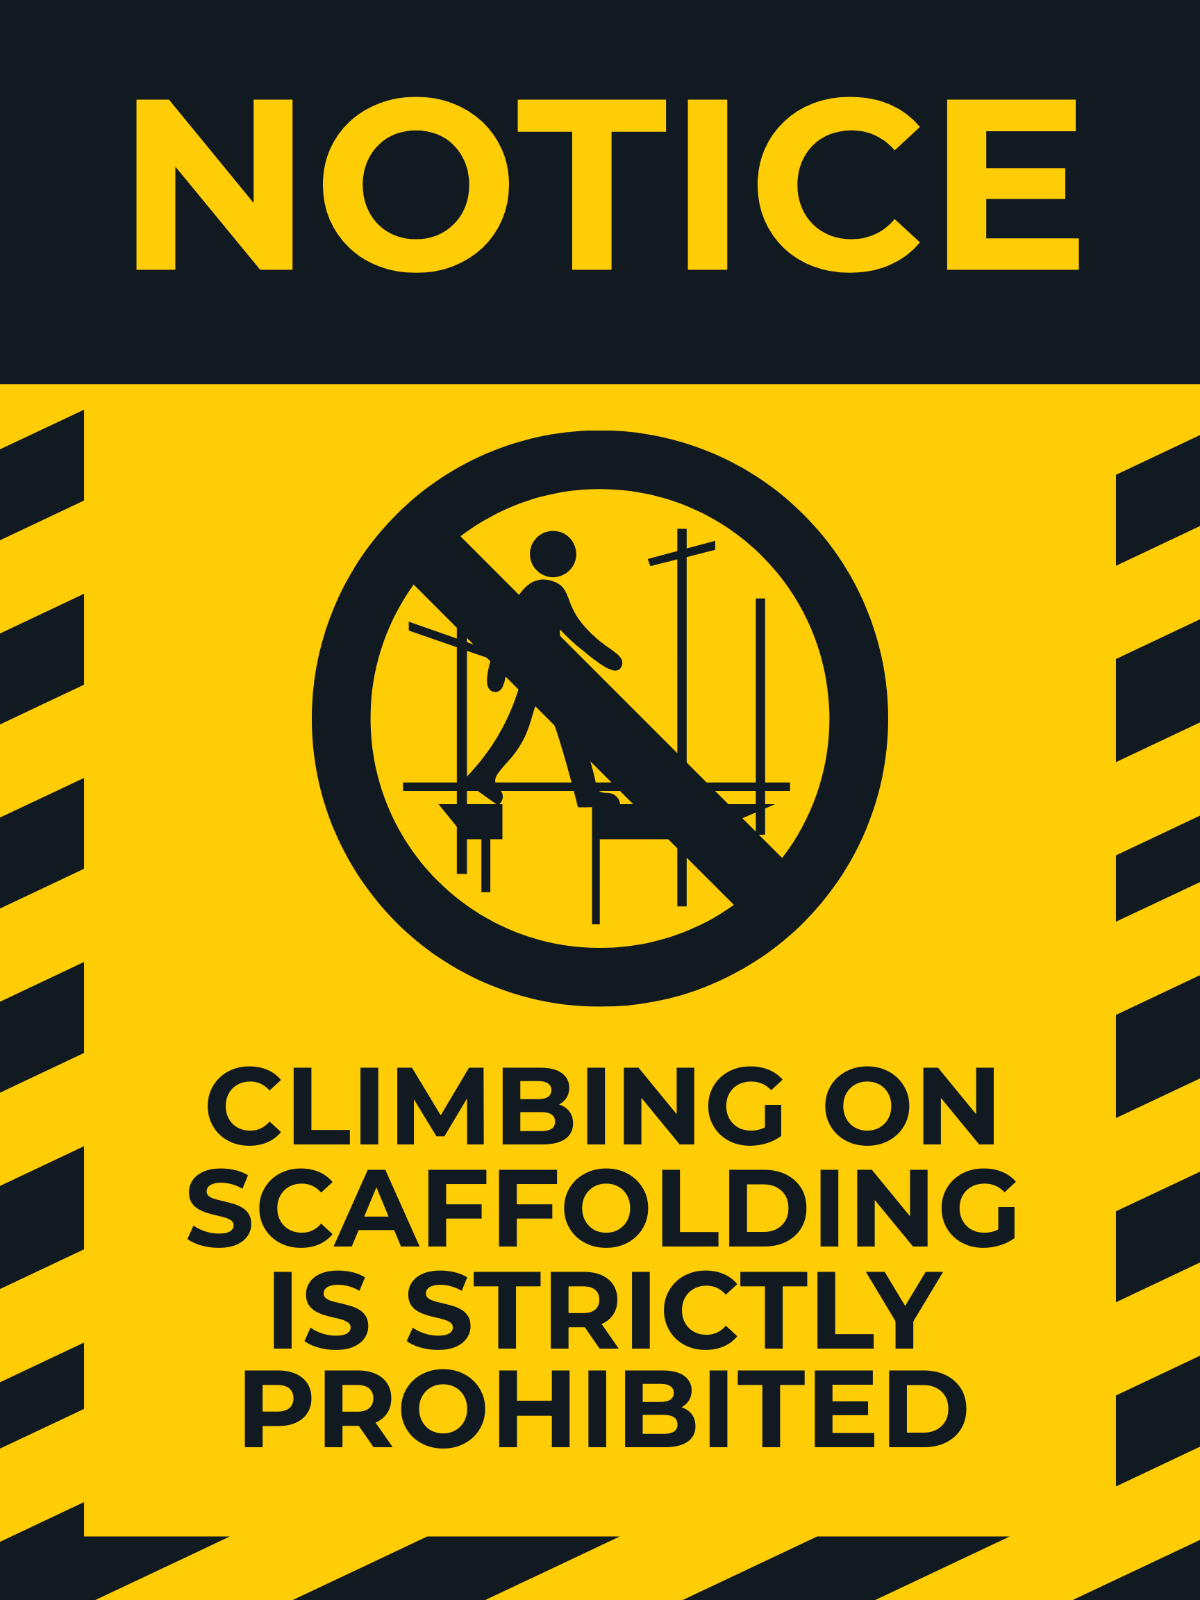 Danger - Do Not Climb on Scaffolding Sign Template